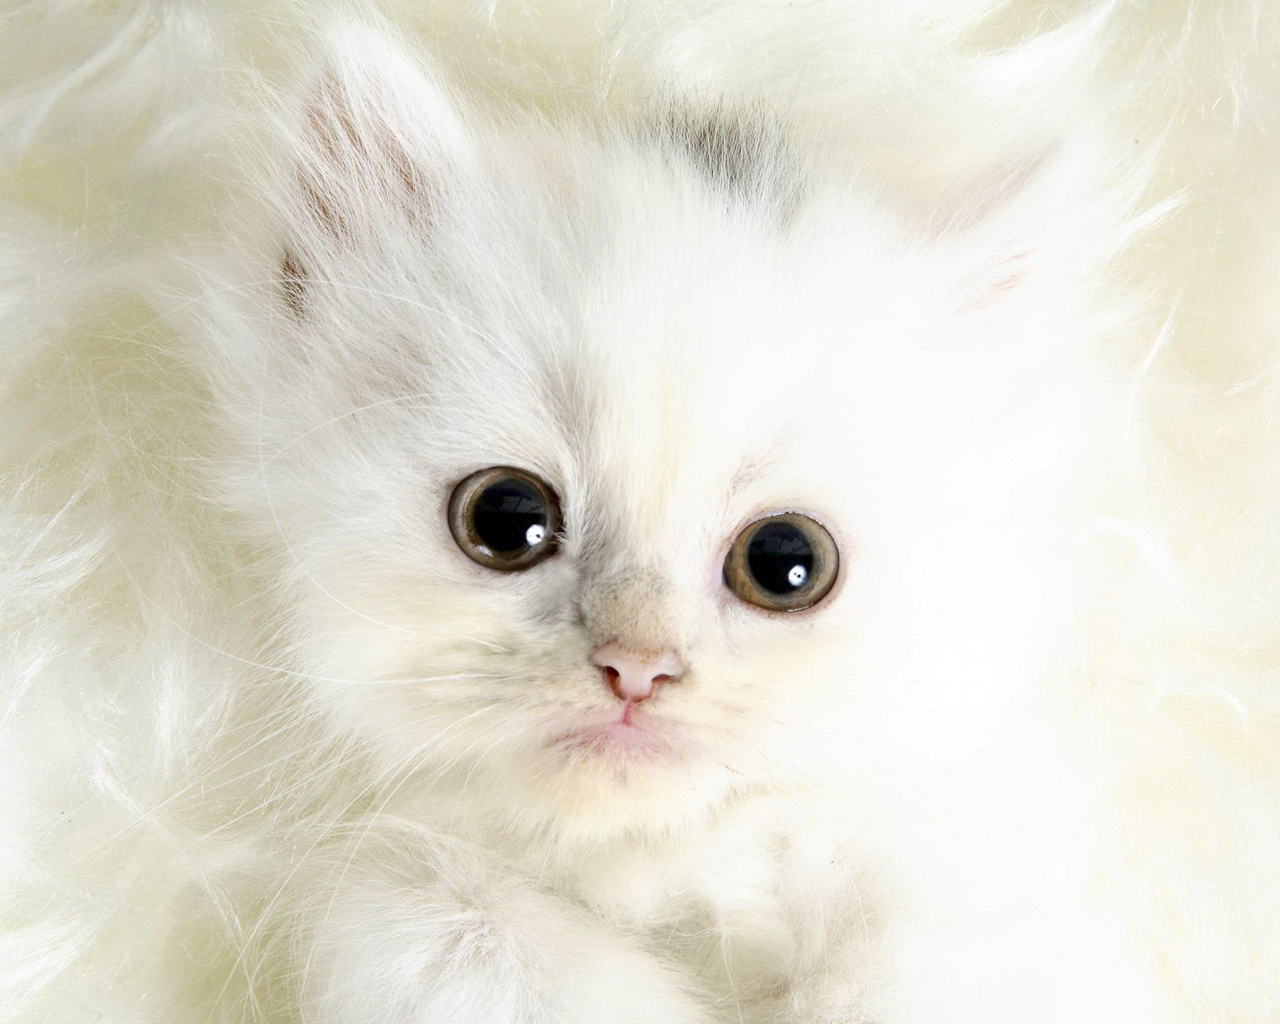 fond d'écran chat blanc,chat,chats de petite à moyenne taille,félidés,moustaches,persan